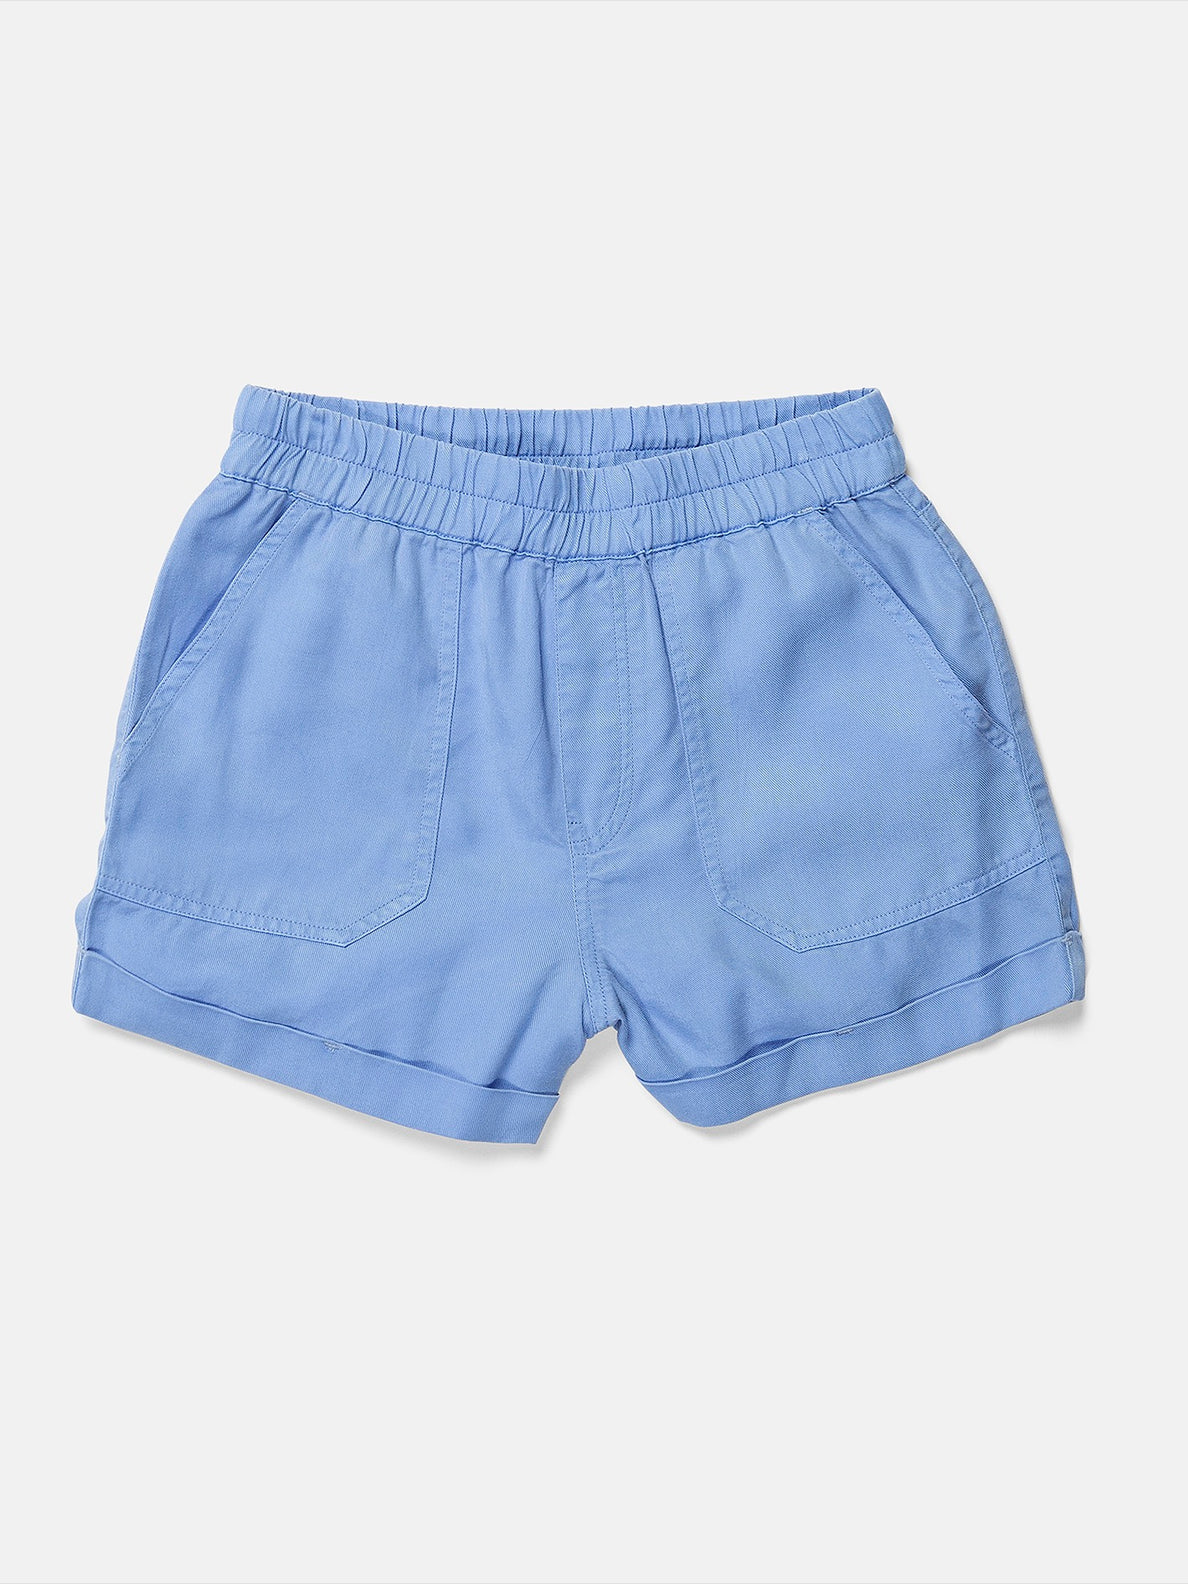 Girls Sunday Strut Shorts - Coastal Blue